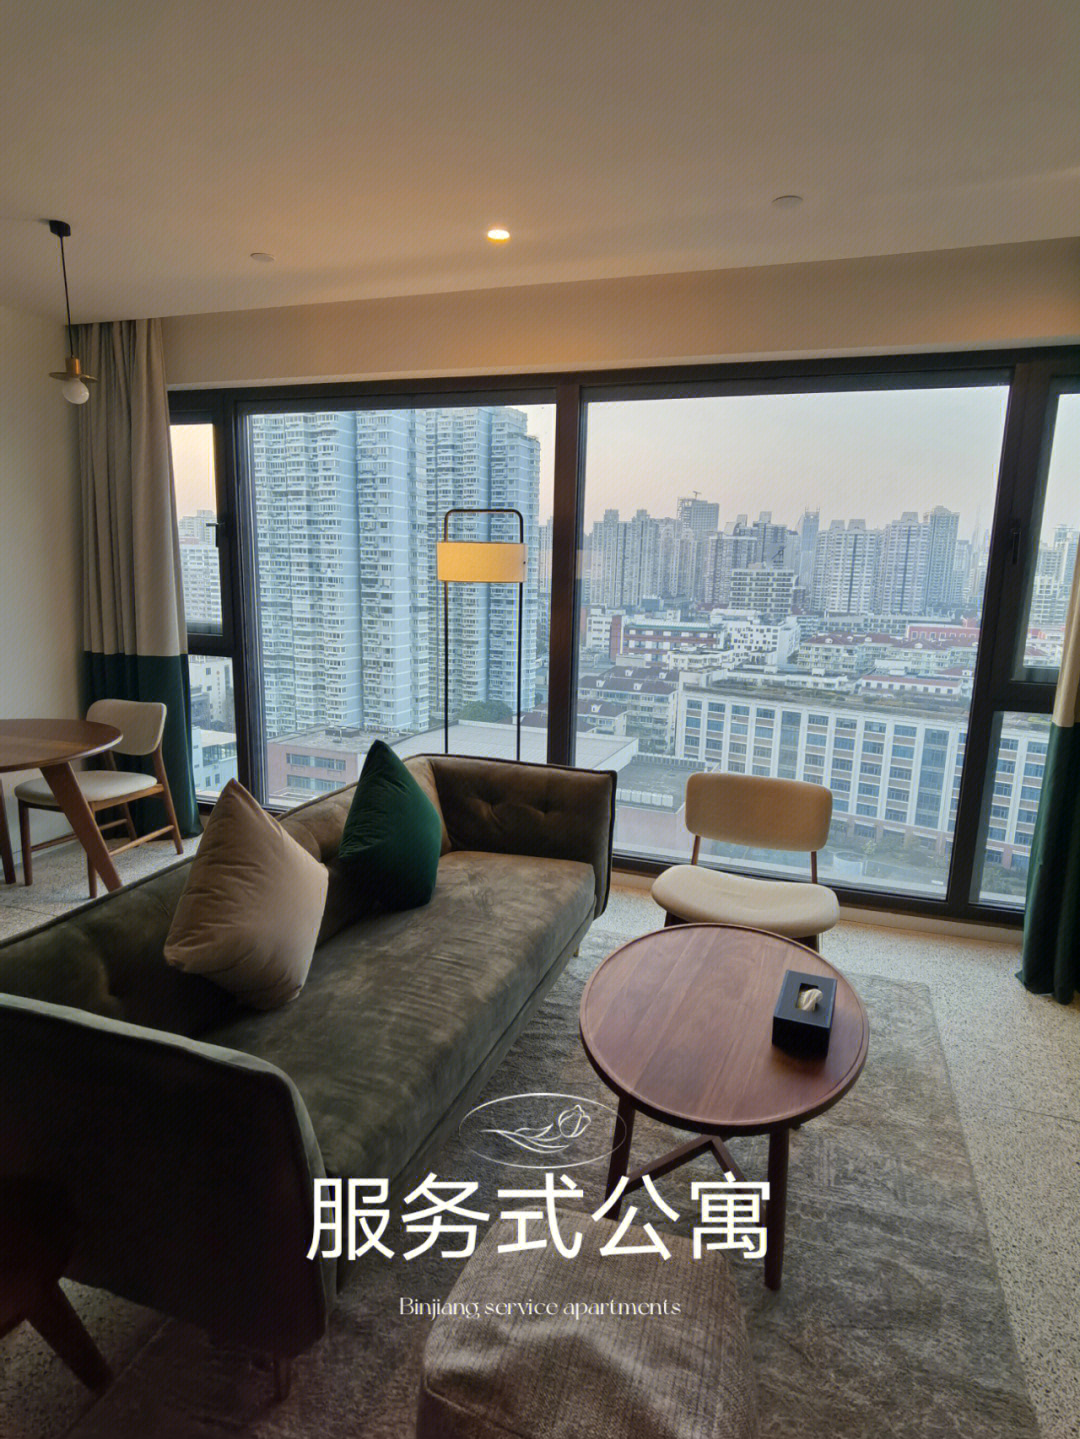 服务式公寓92小区:base滨江